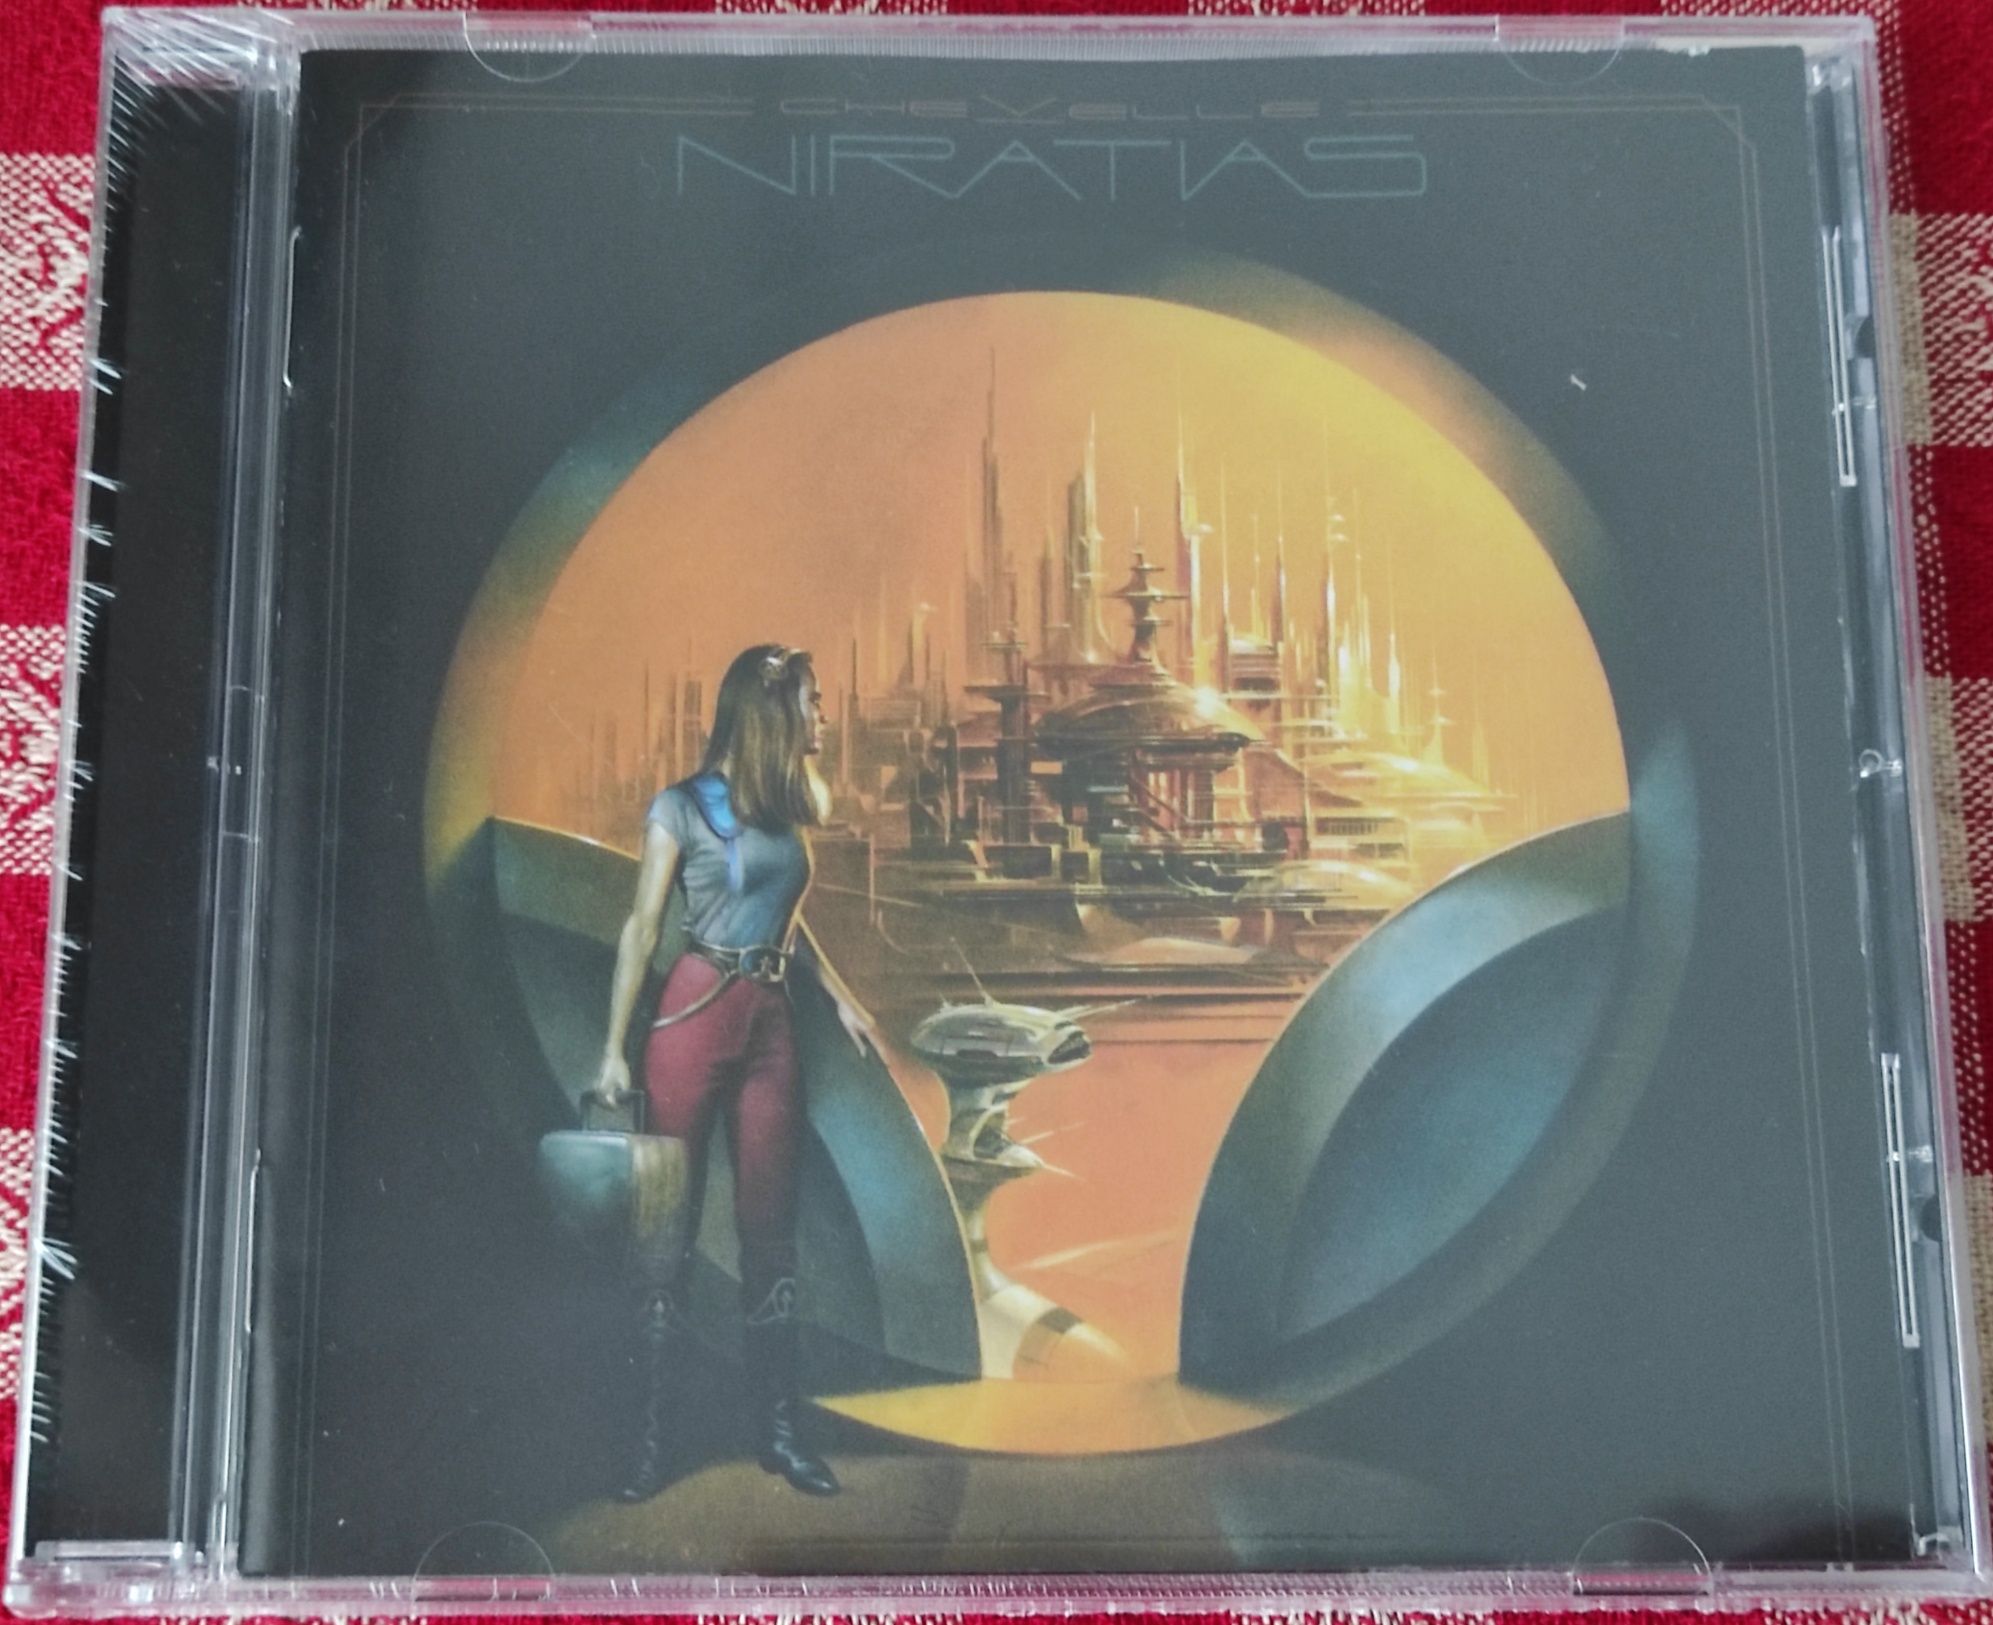 Chevelle - Niratias CD Novo